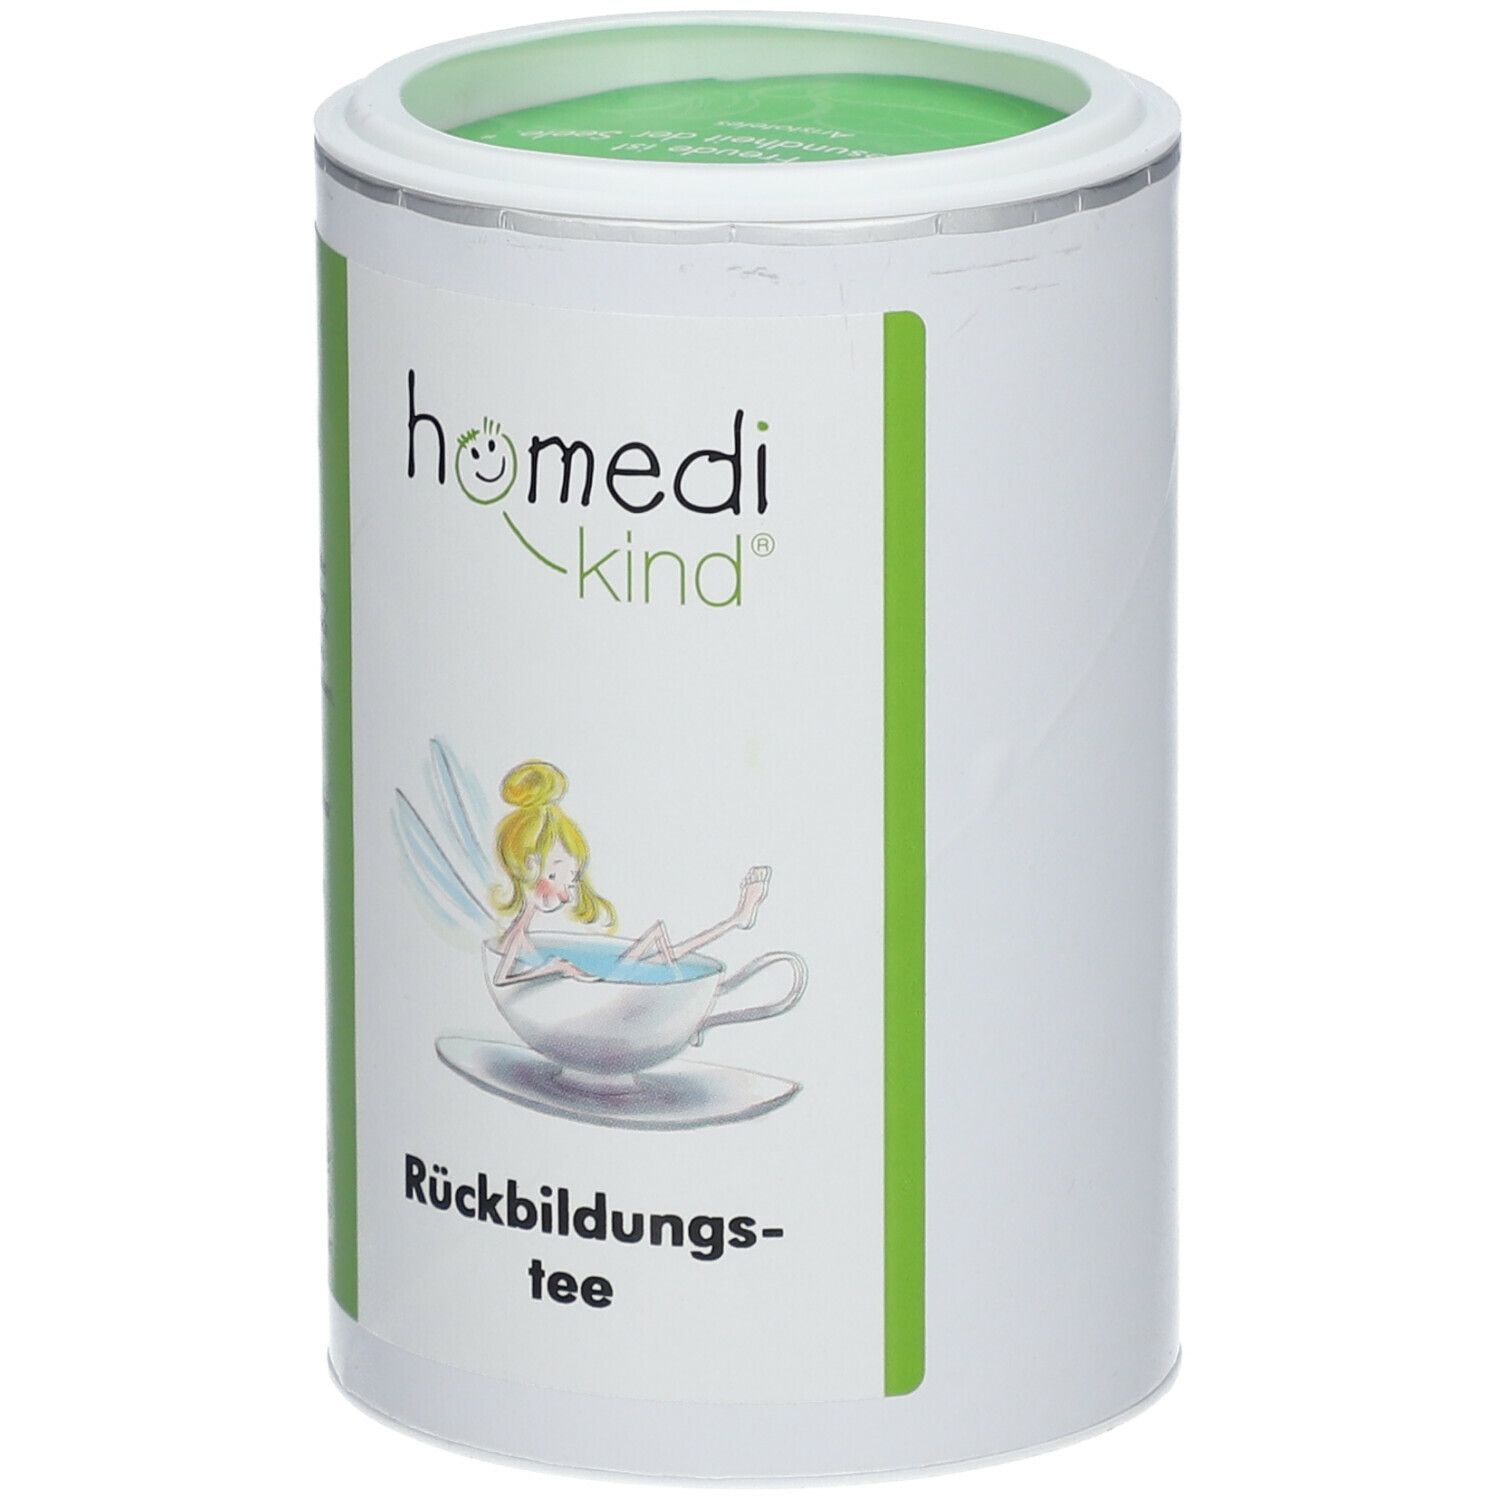 homedi-kind® Rückbildungstee